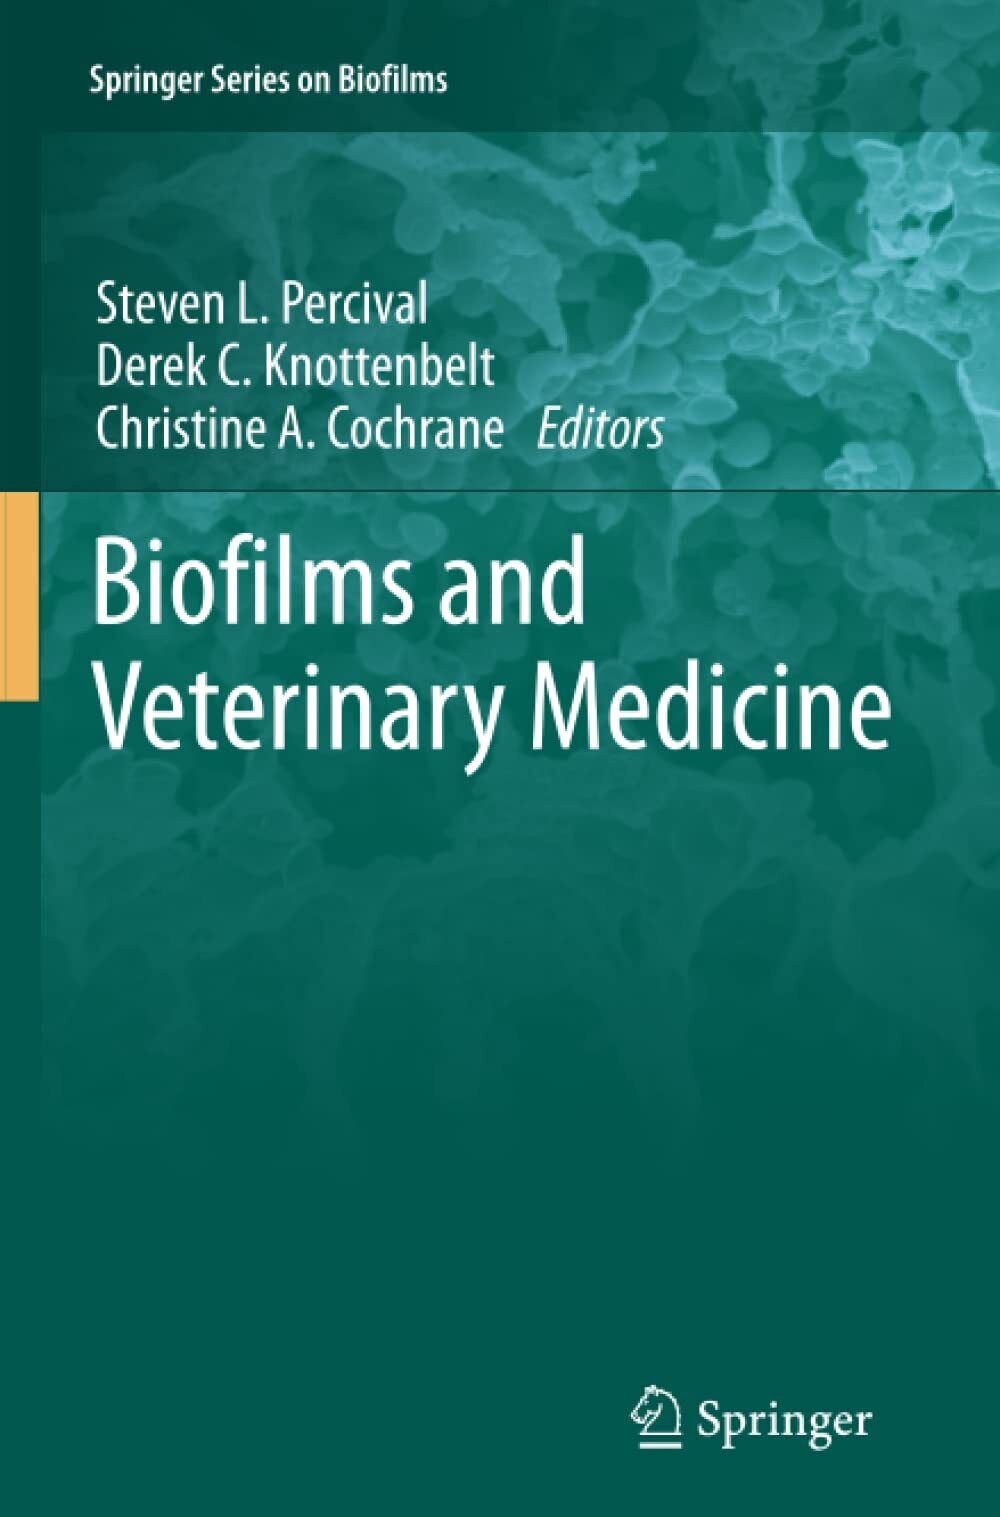 Biofilms and Veterinary Medicine: 6 - Steven L. Percival - Springer, 2013